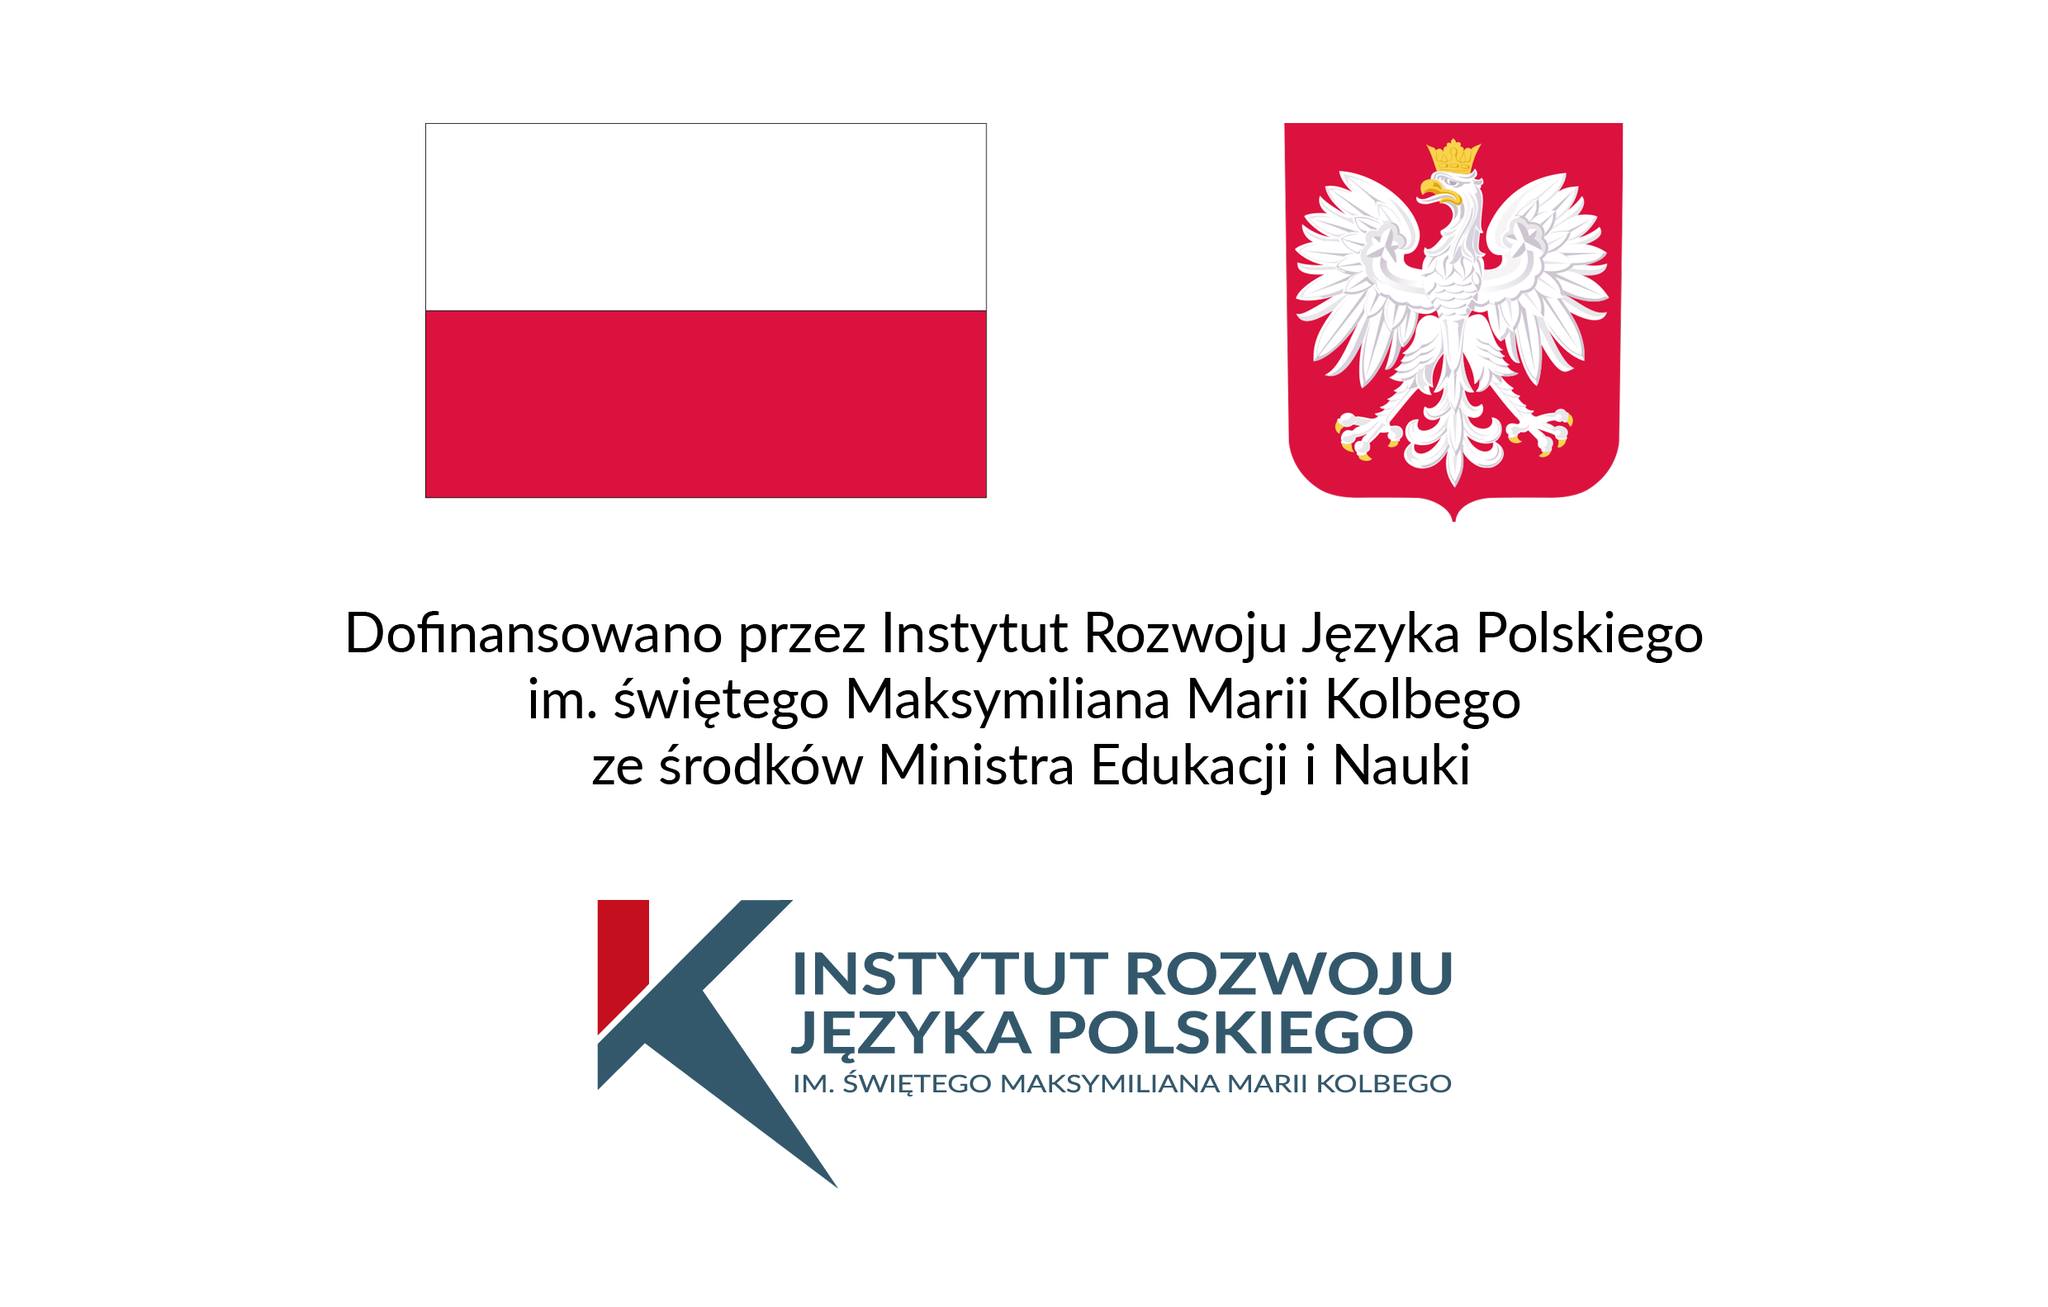 Projekt dofinansowany przez Instytut Rozwoju Języka Polskiego im. świętego Maksymiliana Marii Kolbego ze środków Ministra Edukacji i Nauki